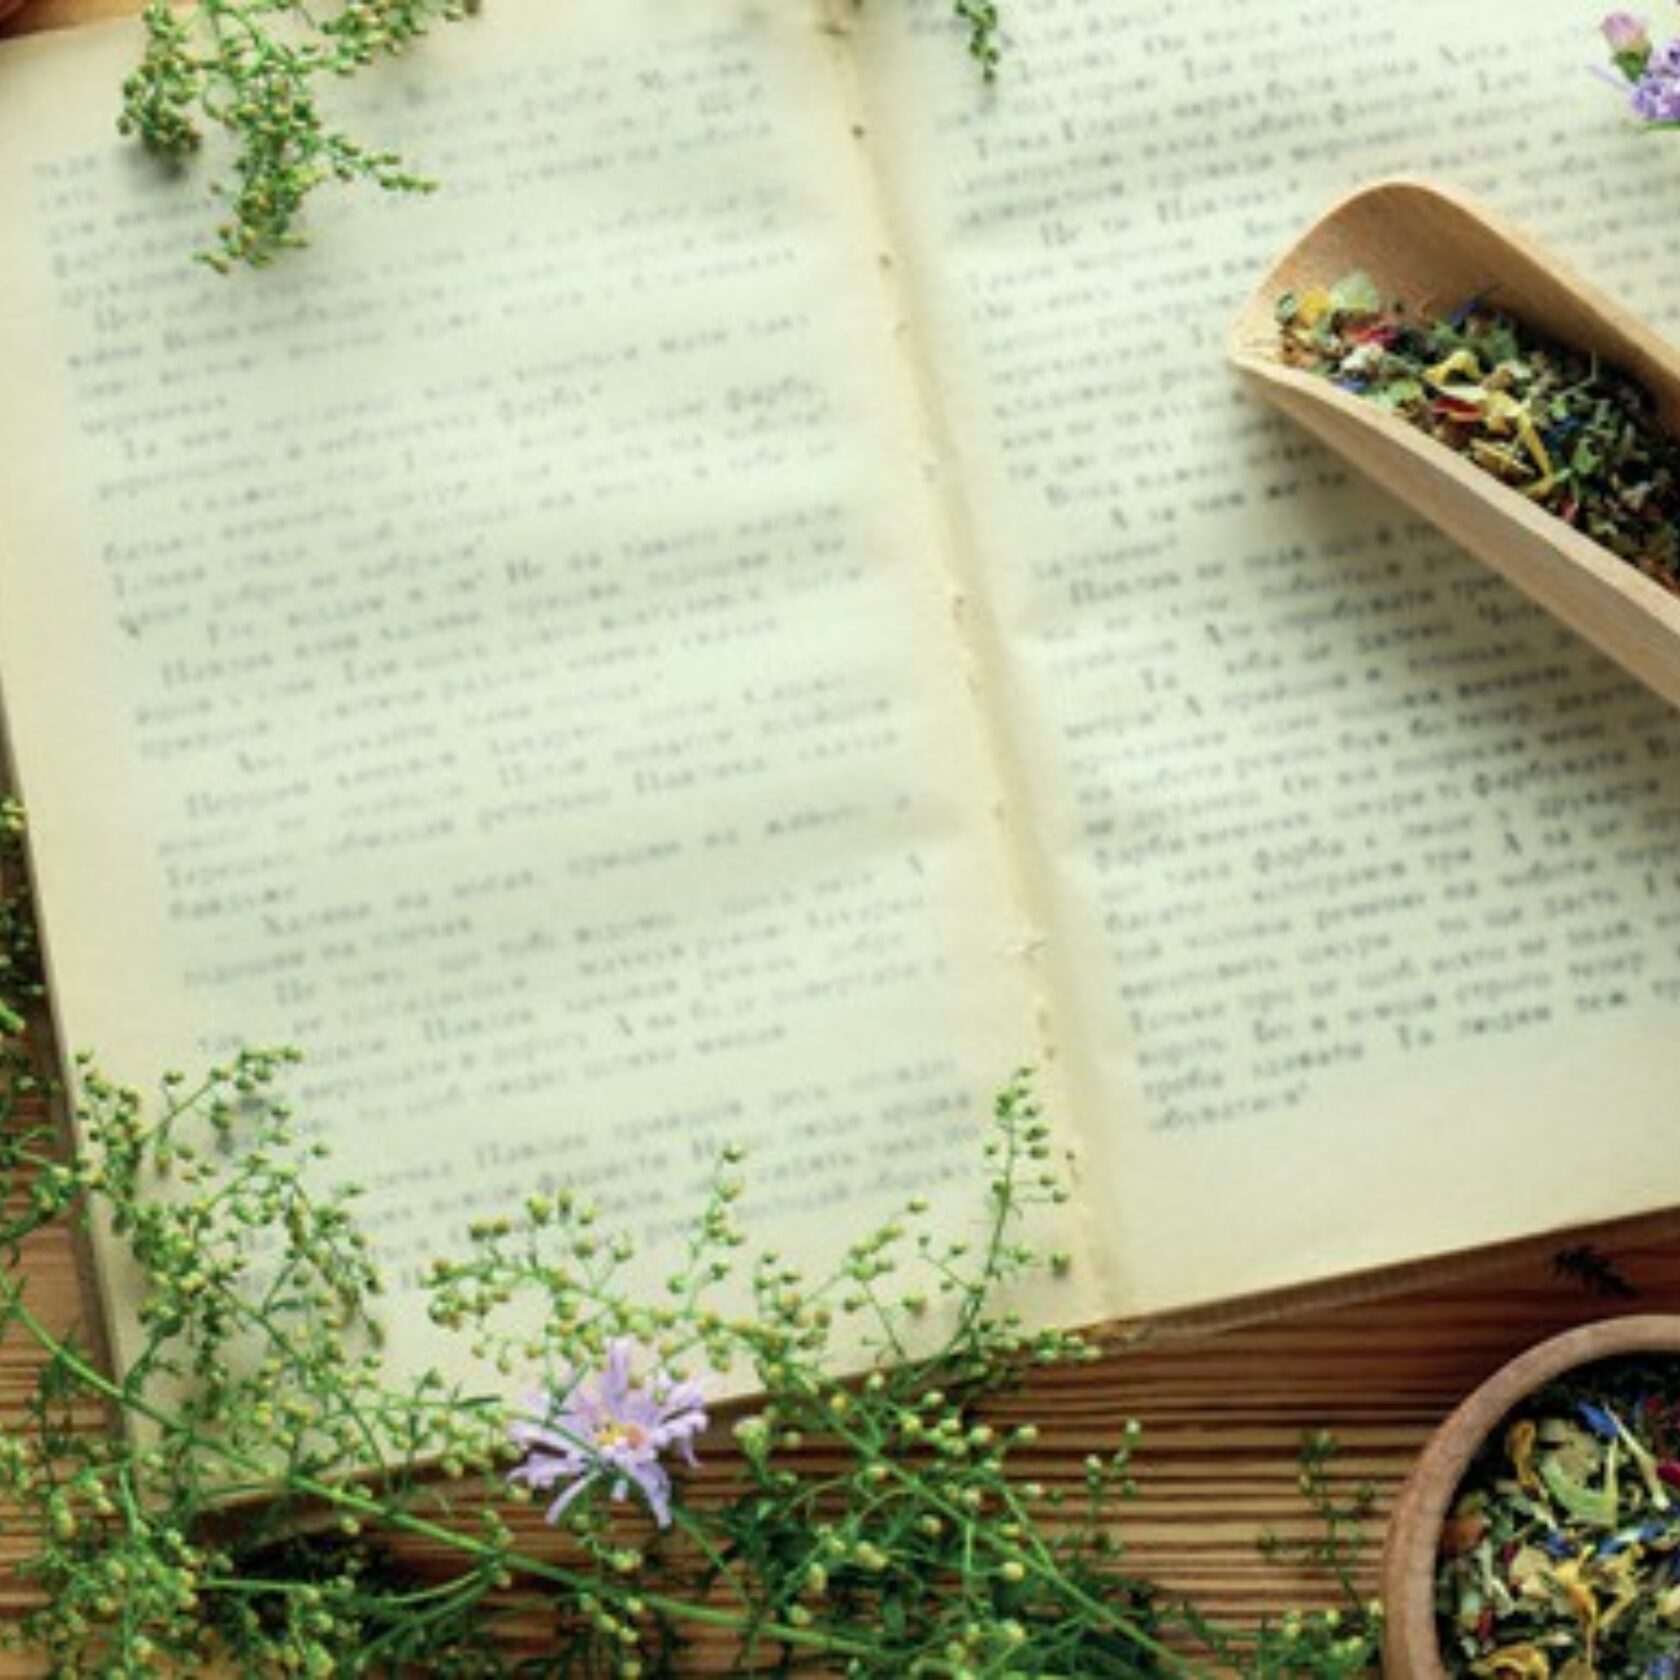 Altes Buch umgeben von getrockneten und frischen Kräutern und Blumen und Arzneimischungen.